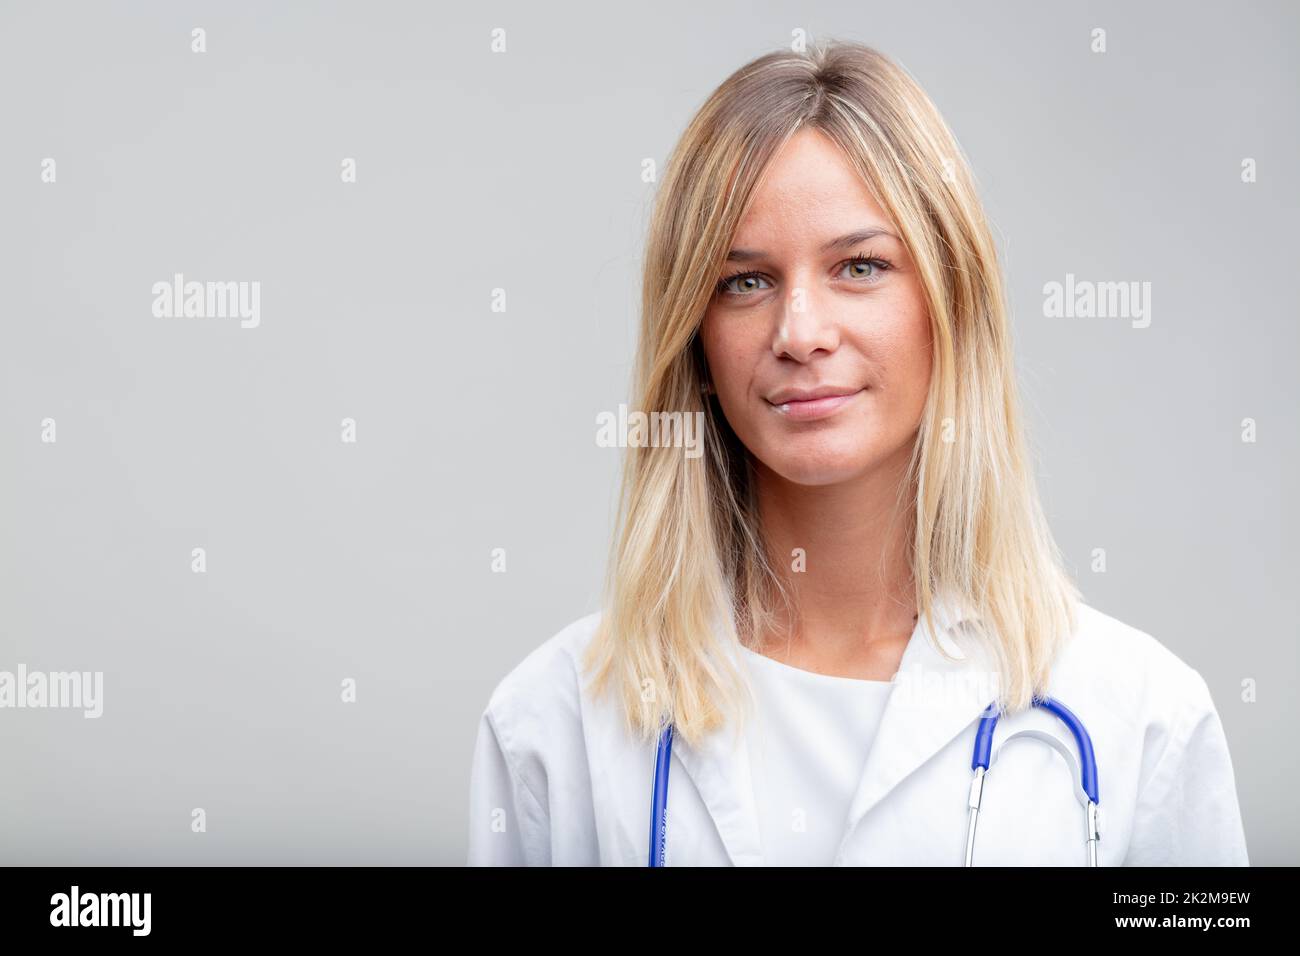 Attraktive junge Krankenschwester oder Ärztin Stockfoto